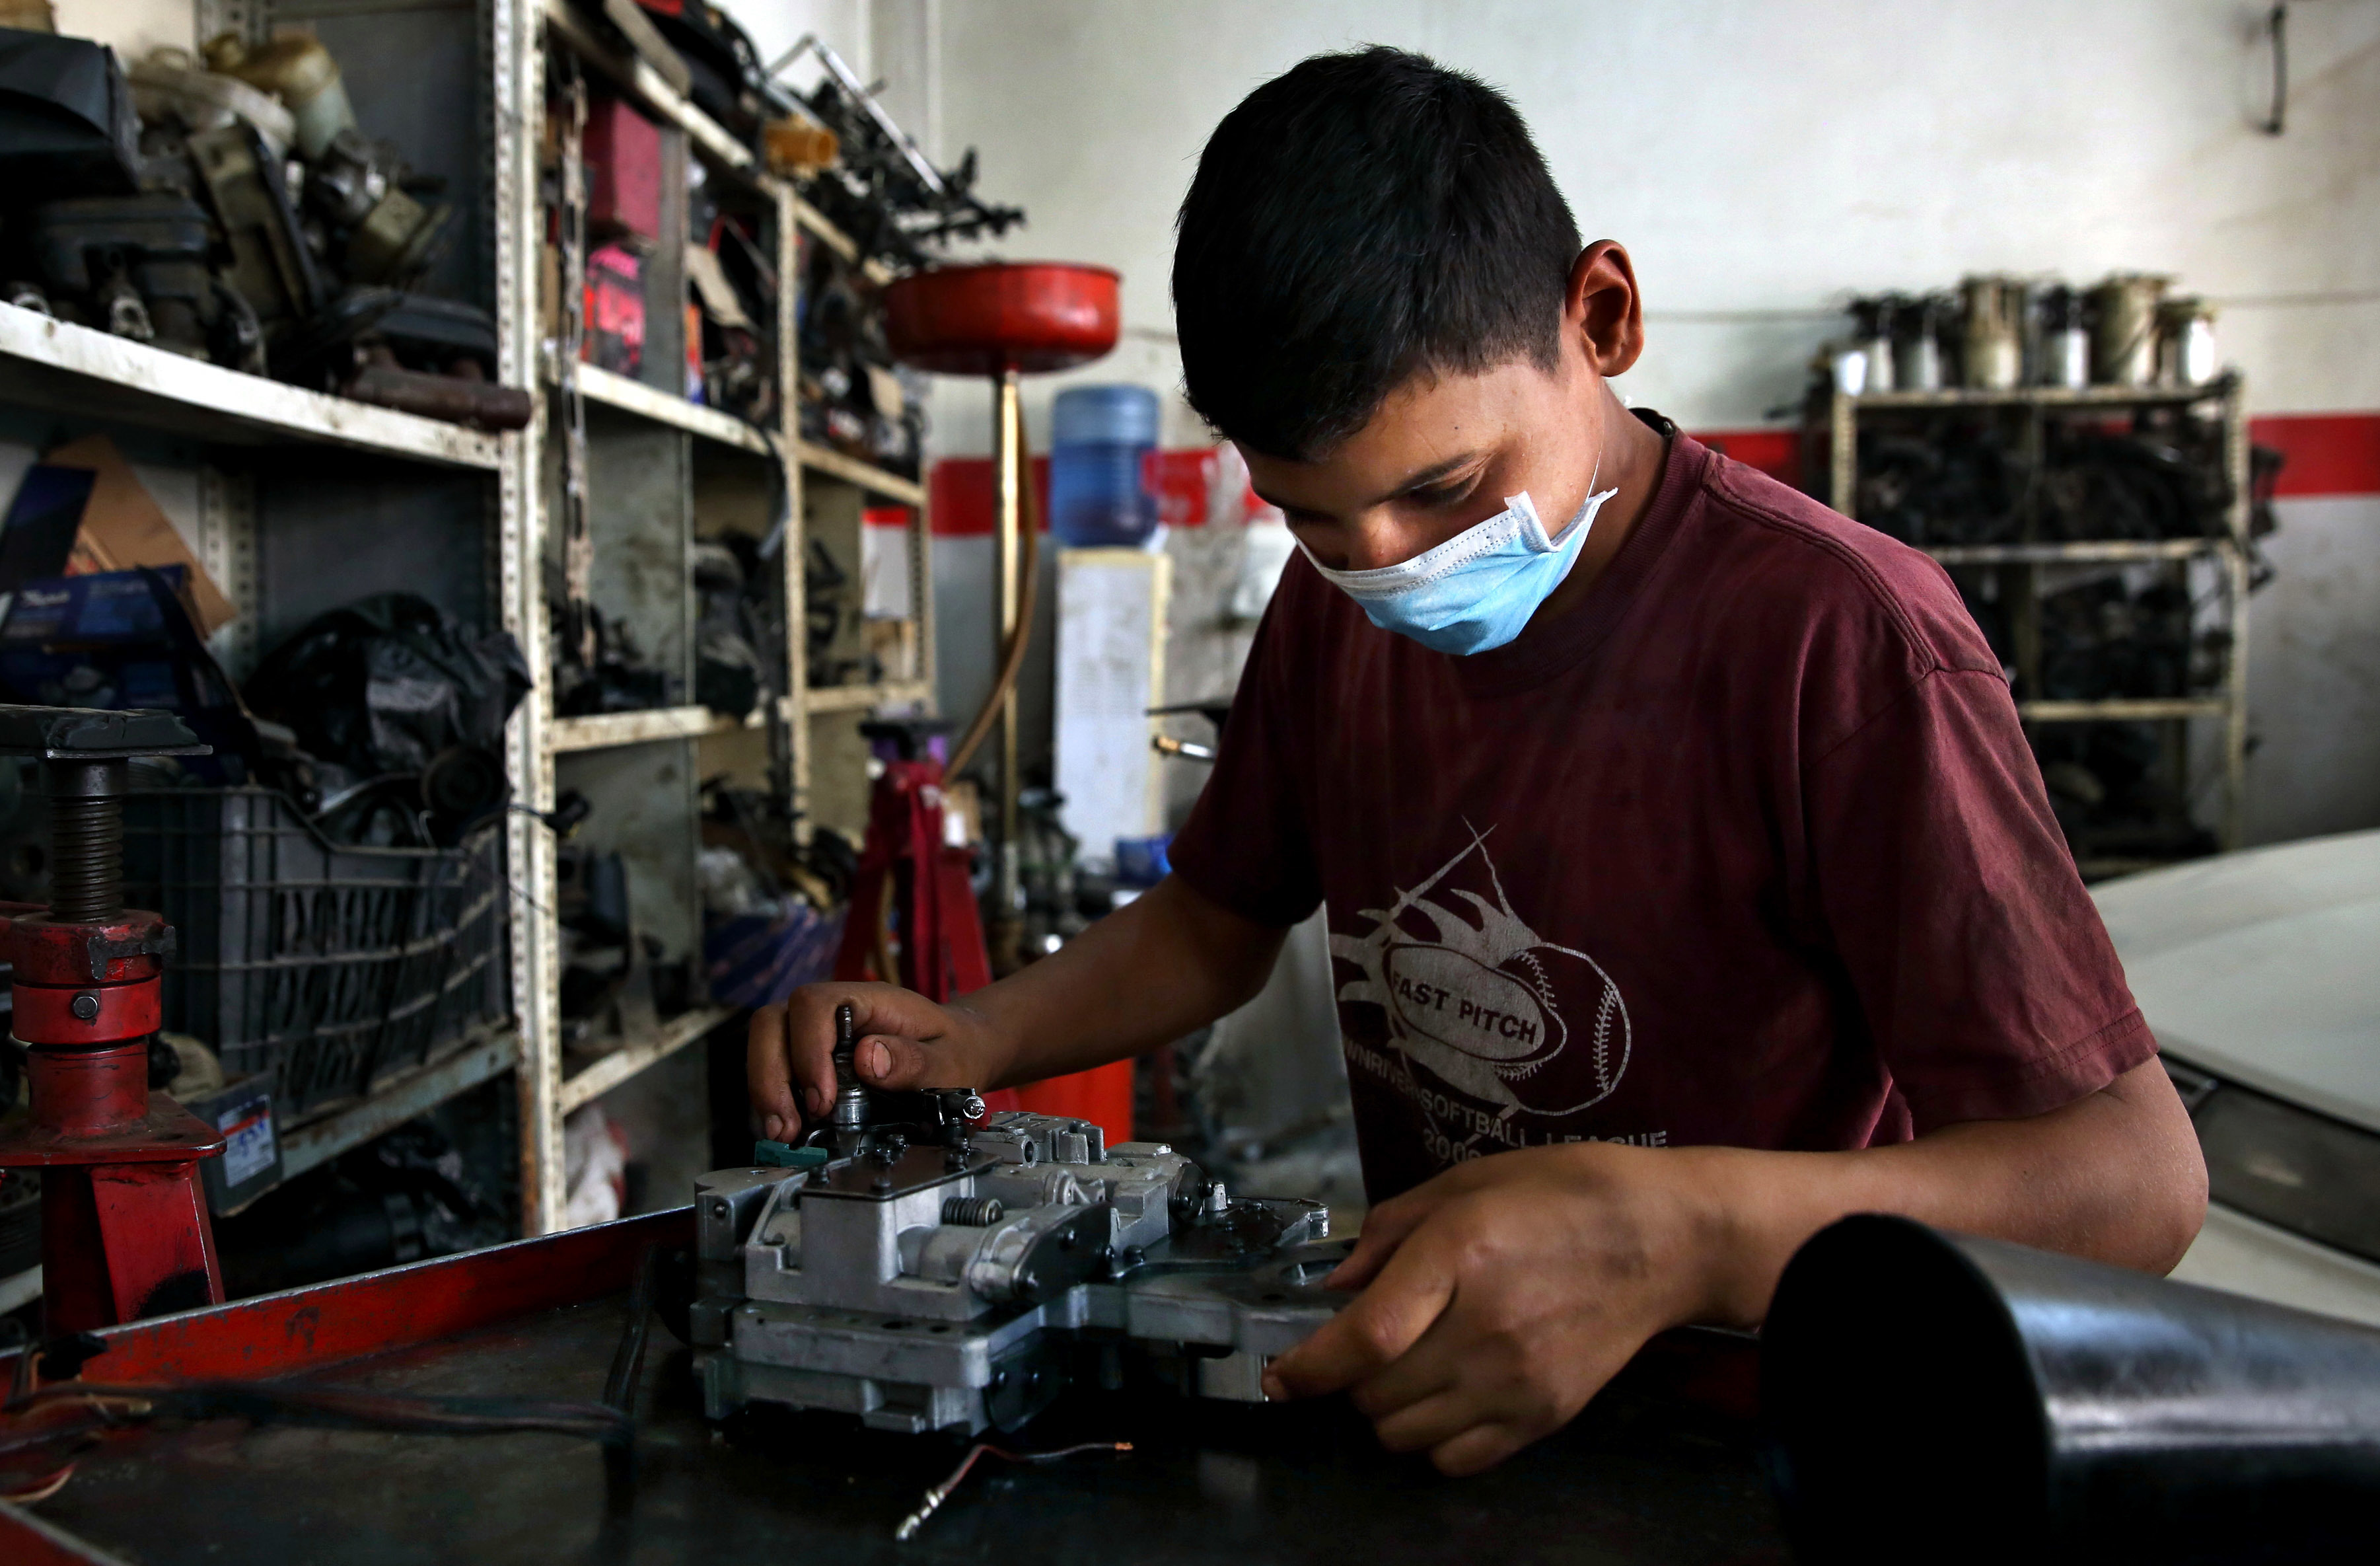 عمالة الأطفال بسبب الفقر والتشريد تشكل تهديدا كبيرا - إنترنت